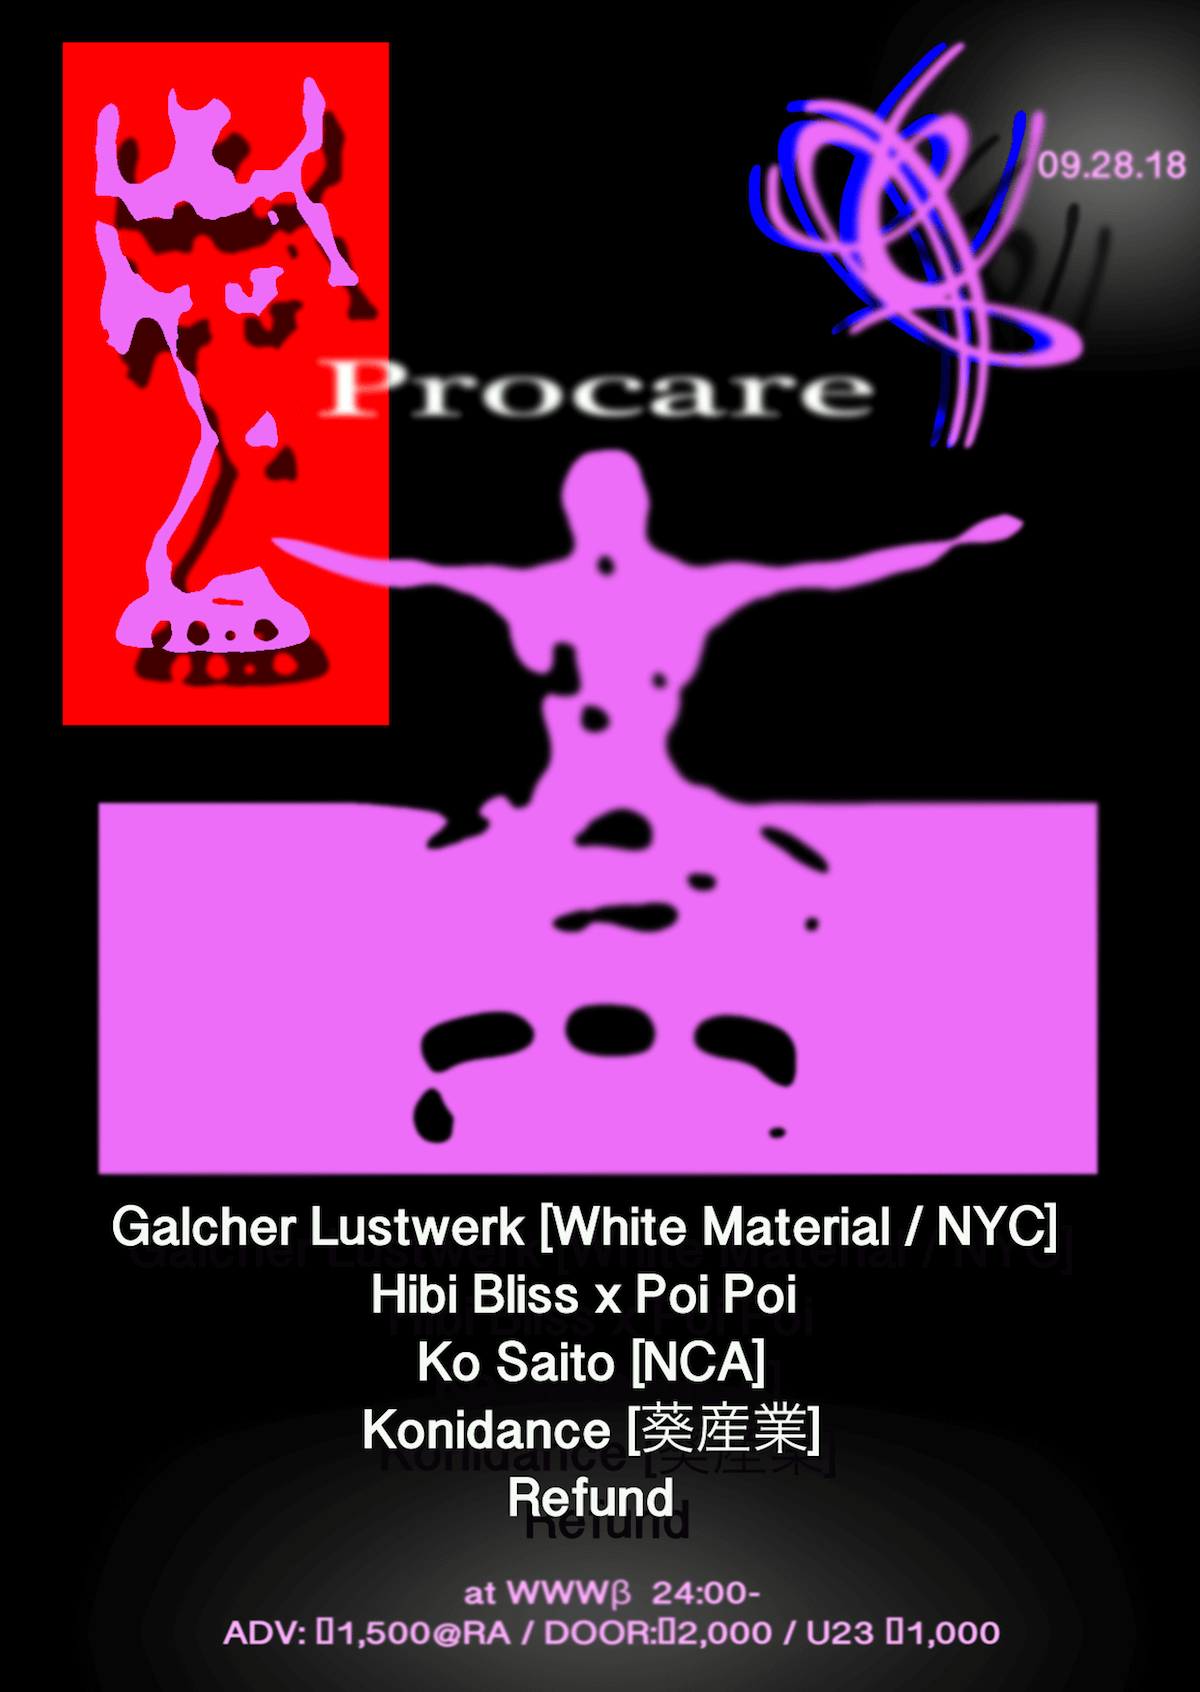 WWWβで開催される東京の新興コレクティブ〈Procare〉第3回にGalcher Lustwerkが初来日 music180907-professionalcare-1-1200x1692